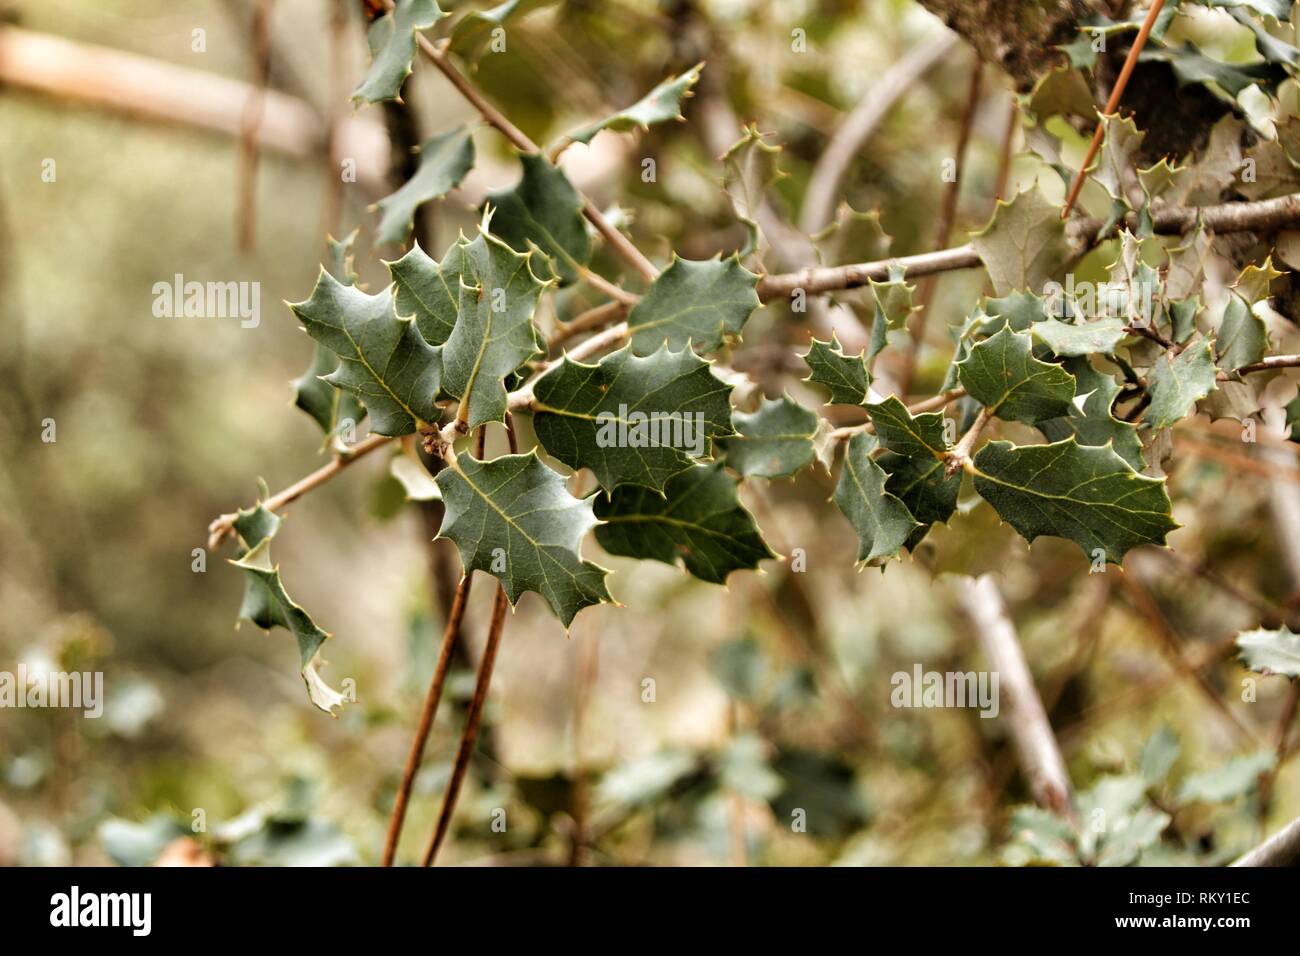 Ilex Aquifolium leaves texture in the forest Stock Photo